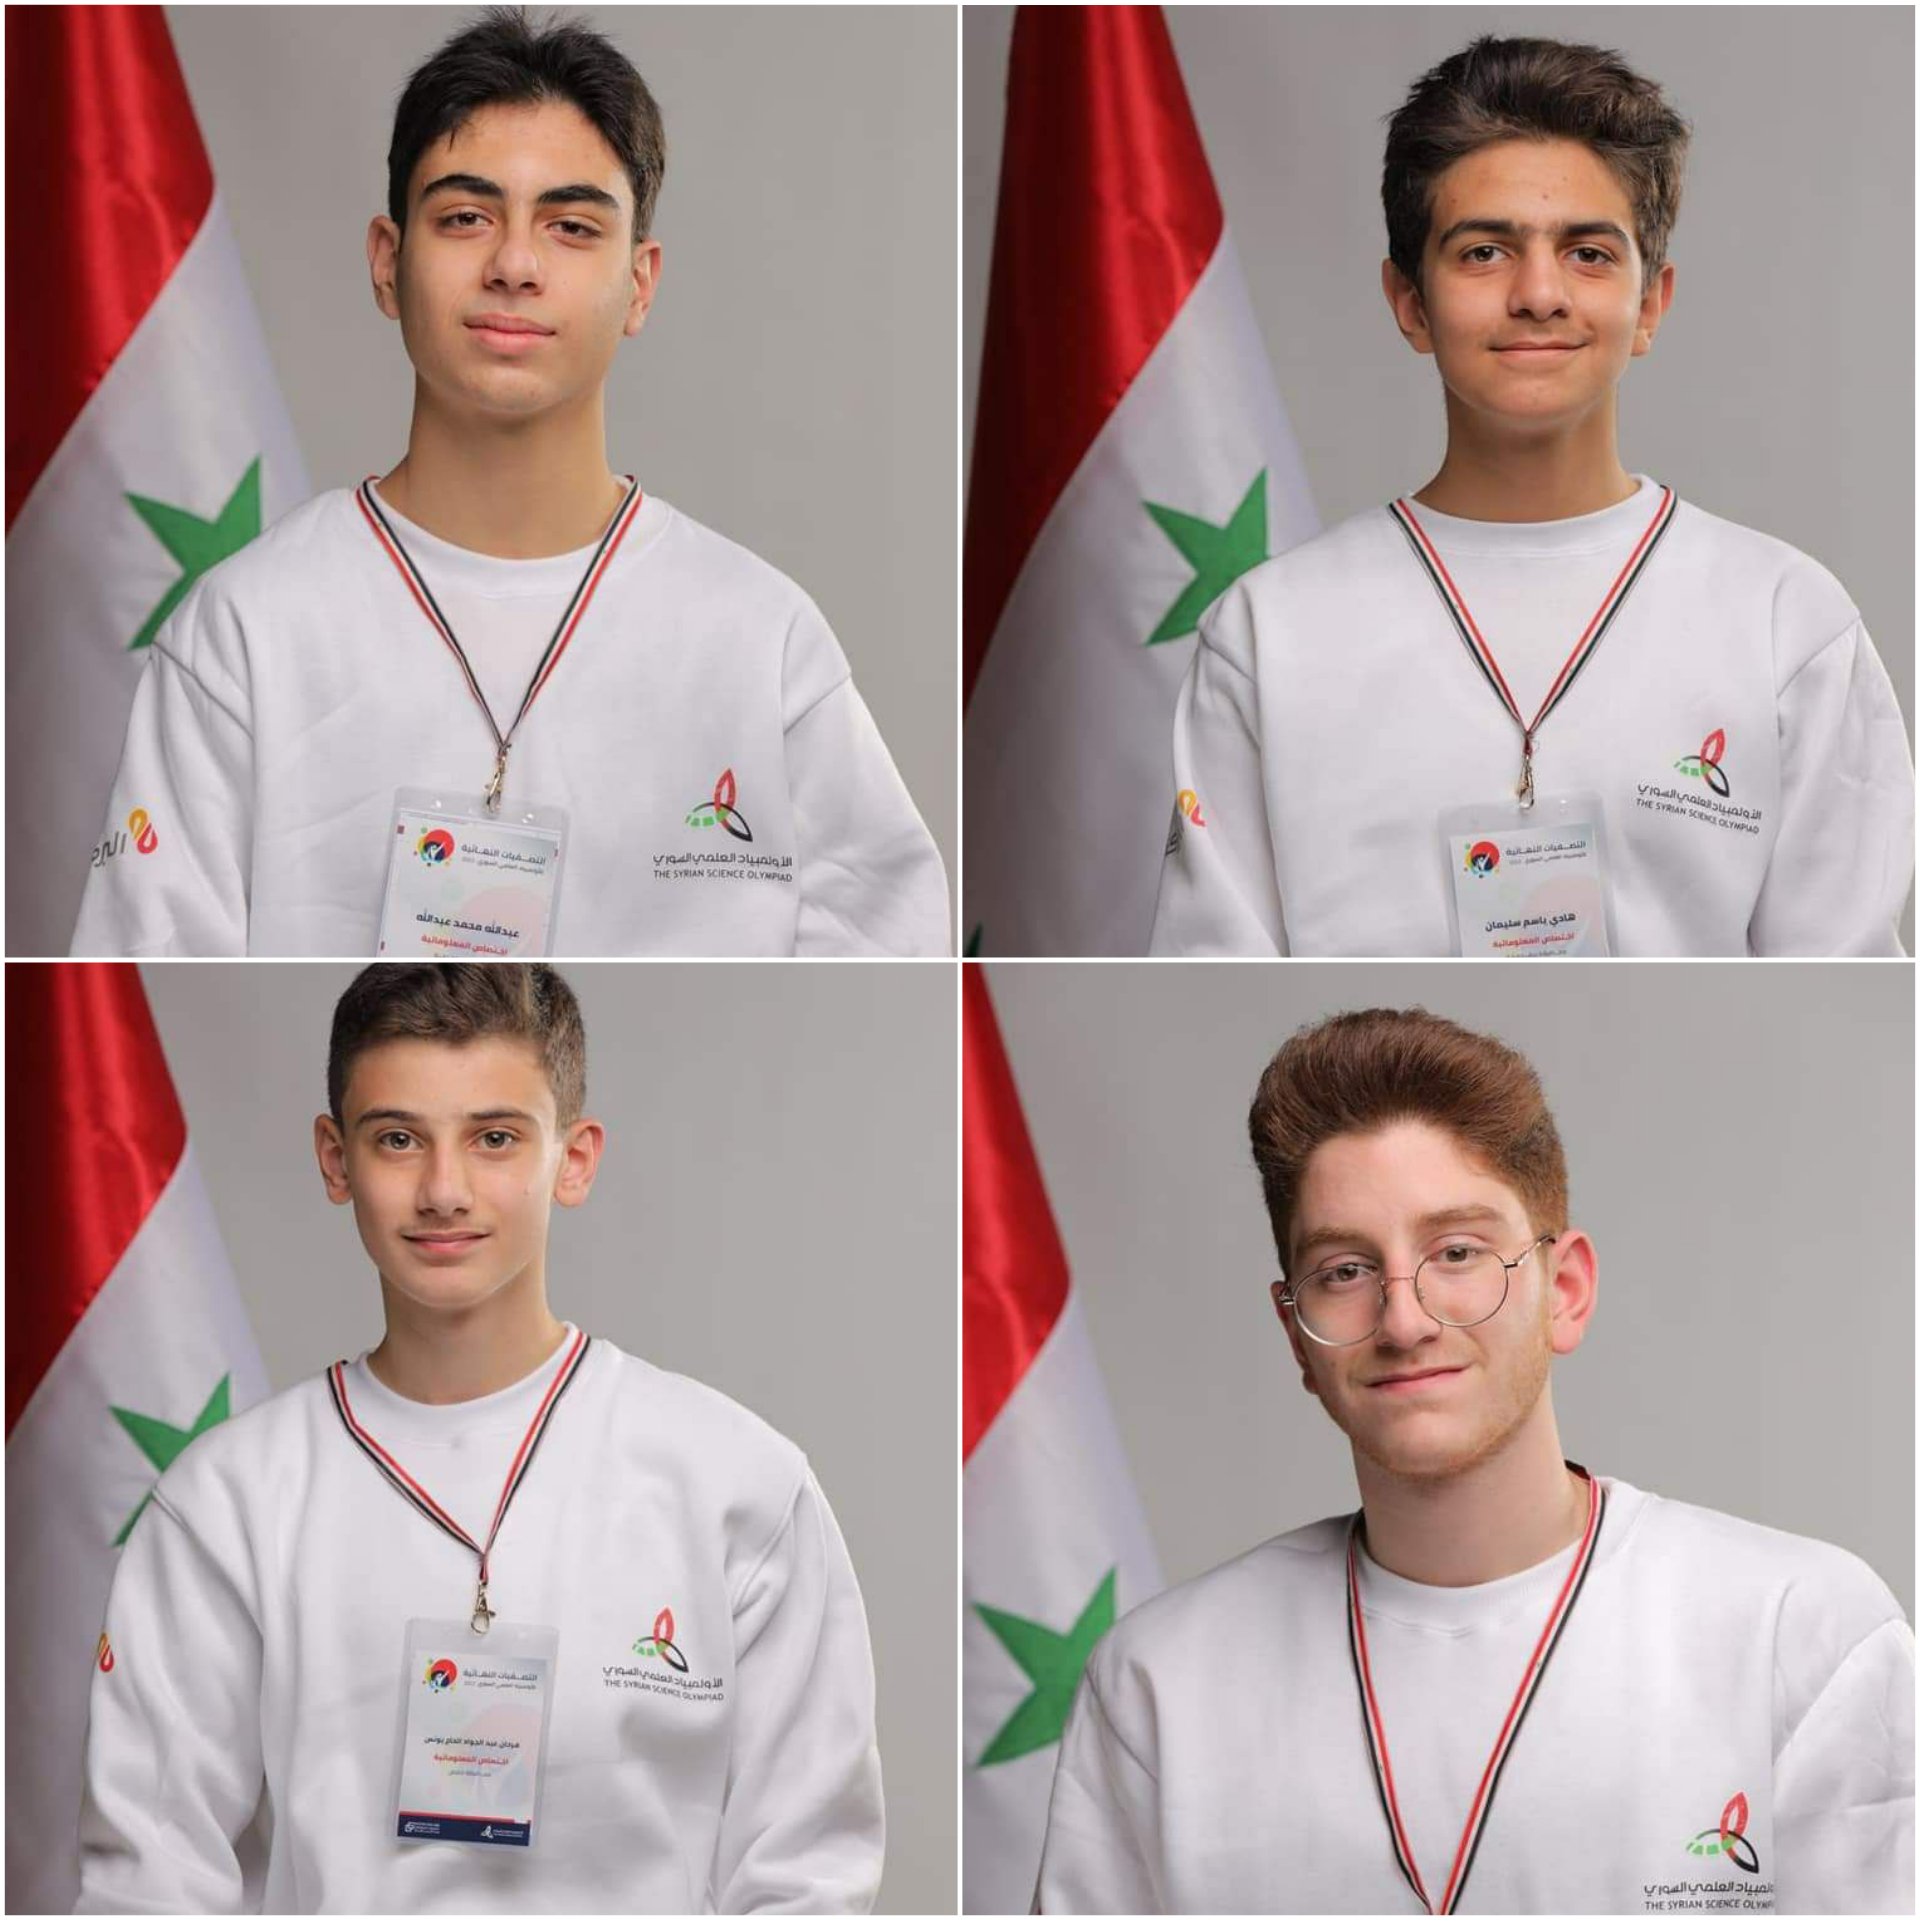 الأولمبياد العلمي السوري يحقق إنجازاً ونتائج مبهرة